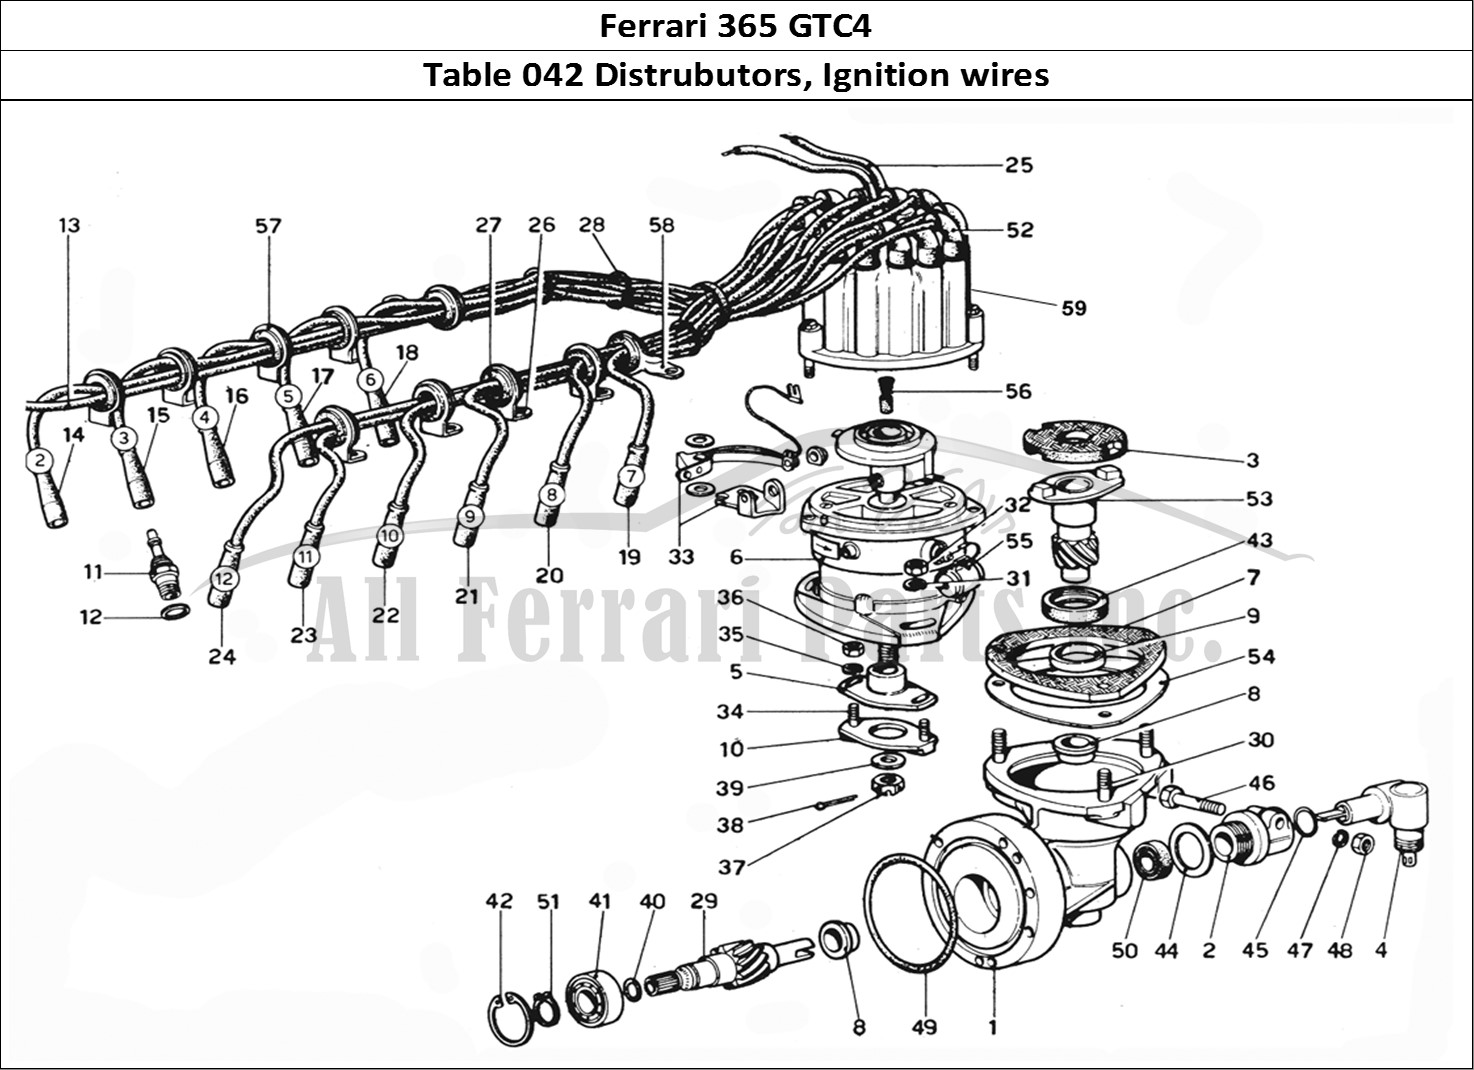 Ferrari Parts Ferrari 365 GTC4 (Mechanical) Page 042 Distribution & H.T Leads